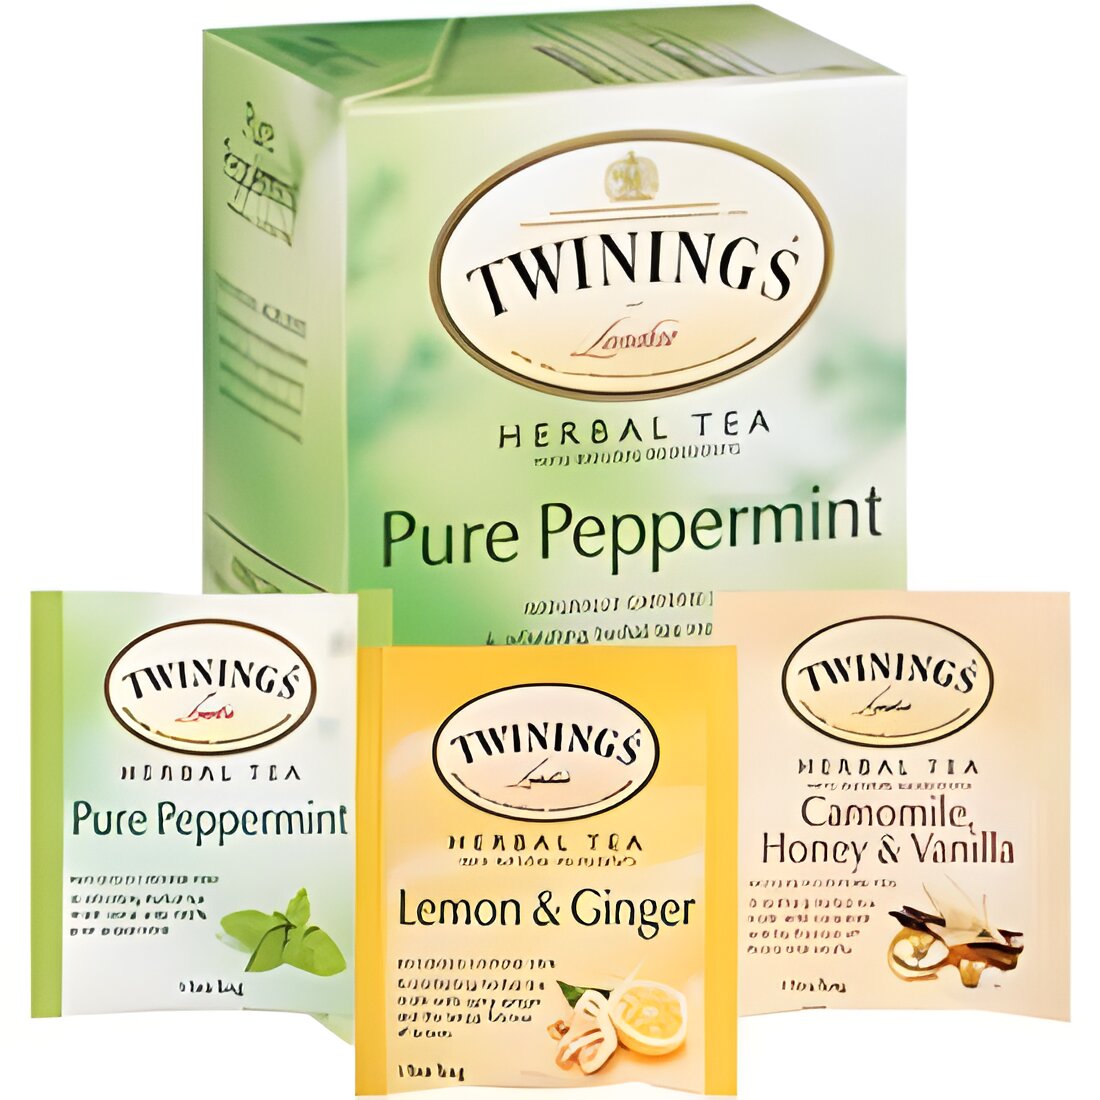 Free Twinings of London Herbal Teas